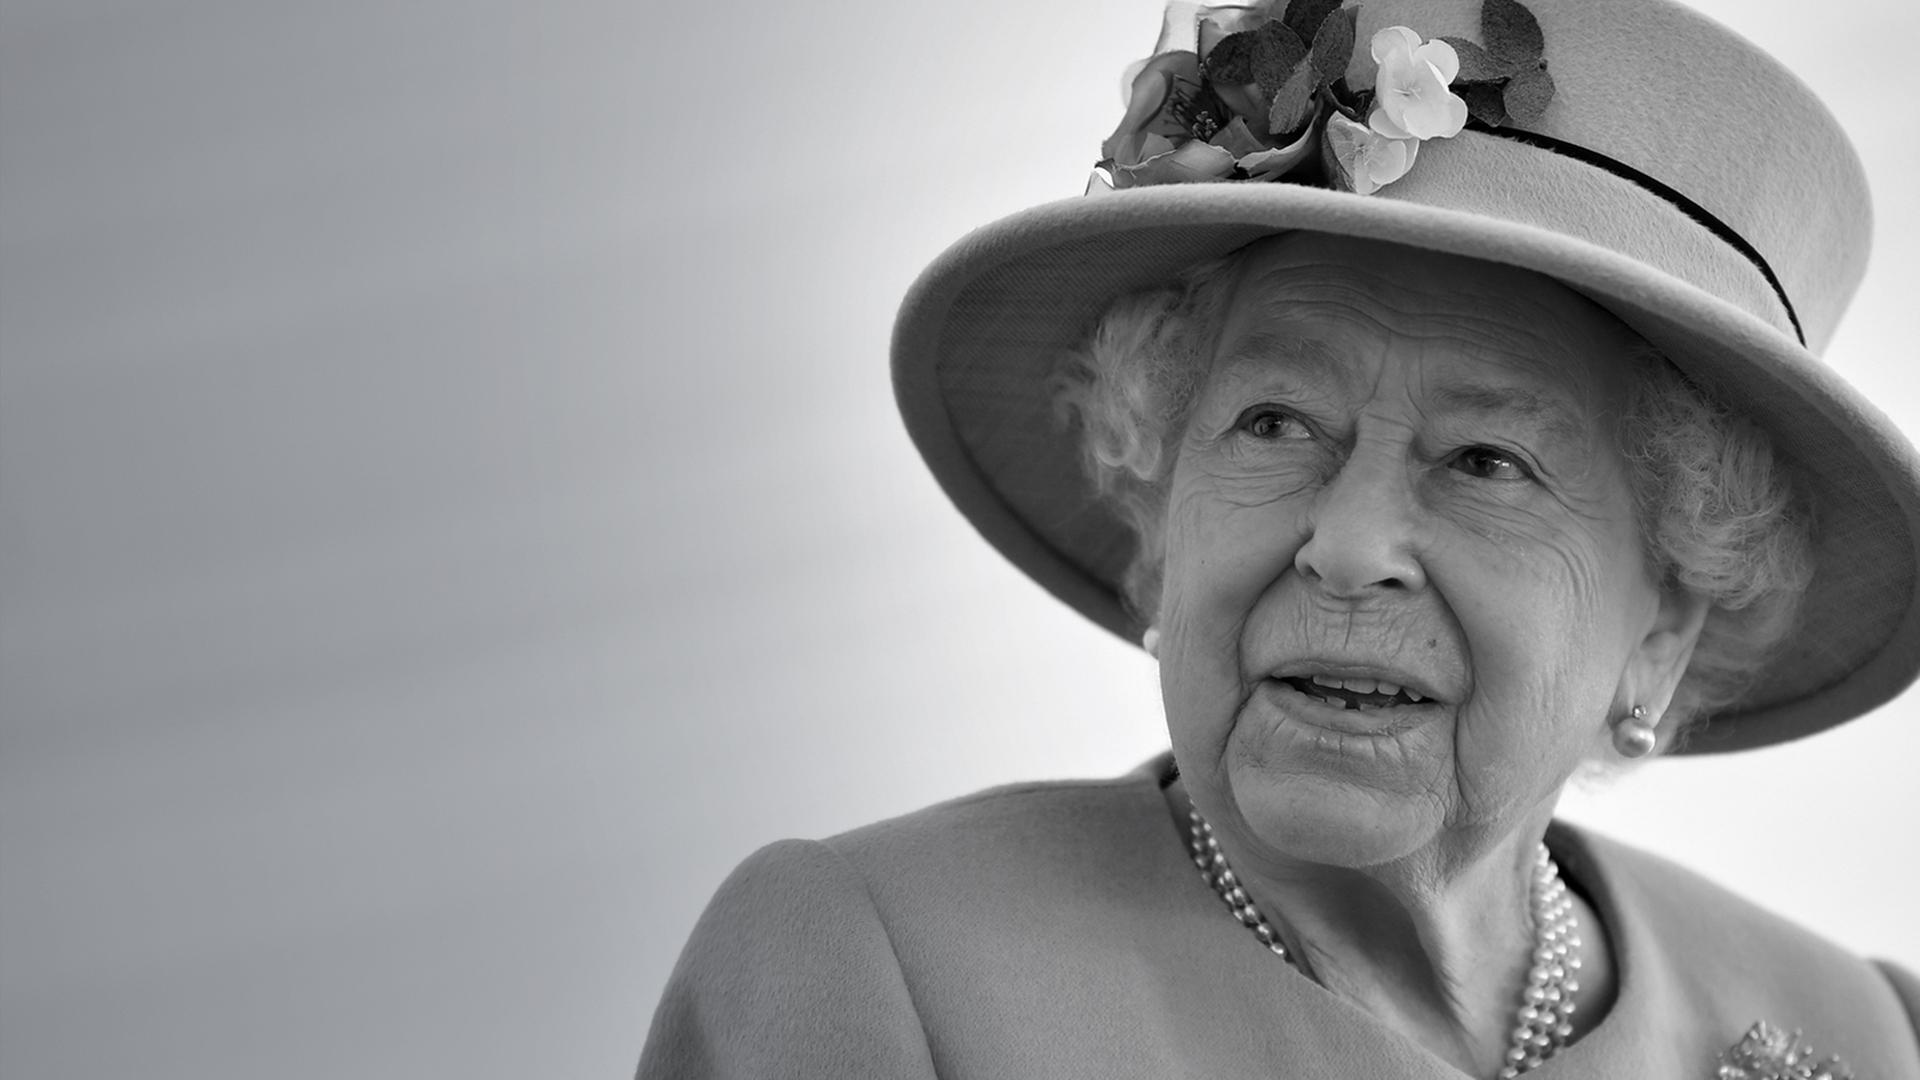 Königin Elisabeth II. von Großbritannien spricht während ihres Besuchs eines Rüstungstechnologiezentrum in der Nähe der südenglischen Stadt Salisbury. In einem seltenen persönlichen Einblick hat Queen Elizabeth II. über Folgen ihrer Corona-Erkrankung berichtet.